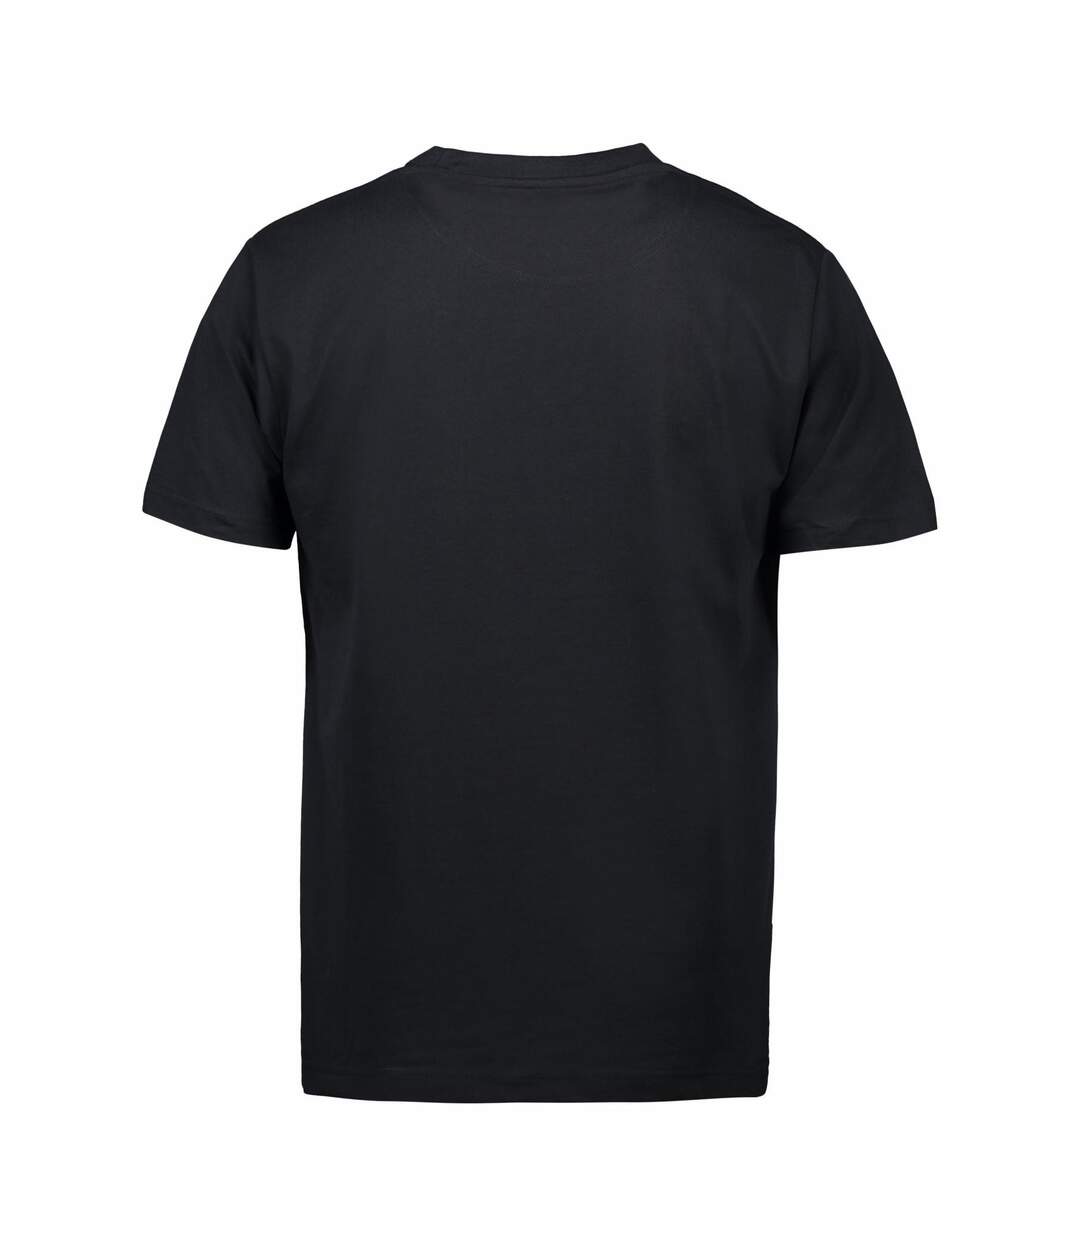 ID Pro - T-shirt à manches courtes (coupe régulière) - Homme (Noir) - UTID162